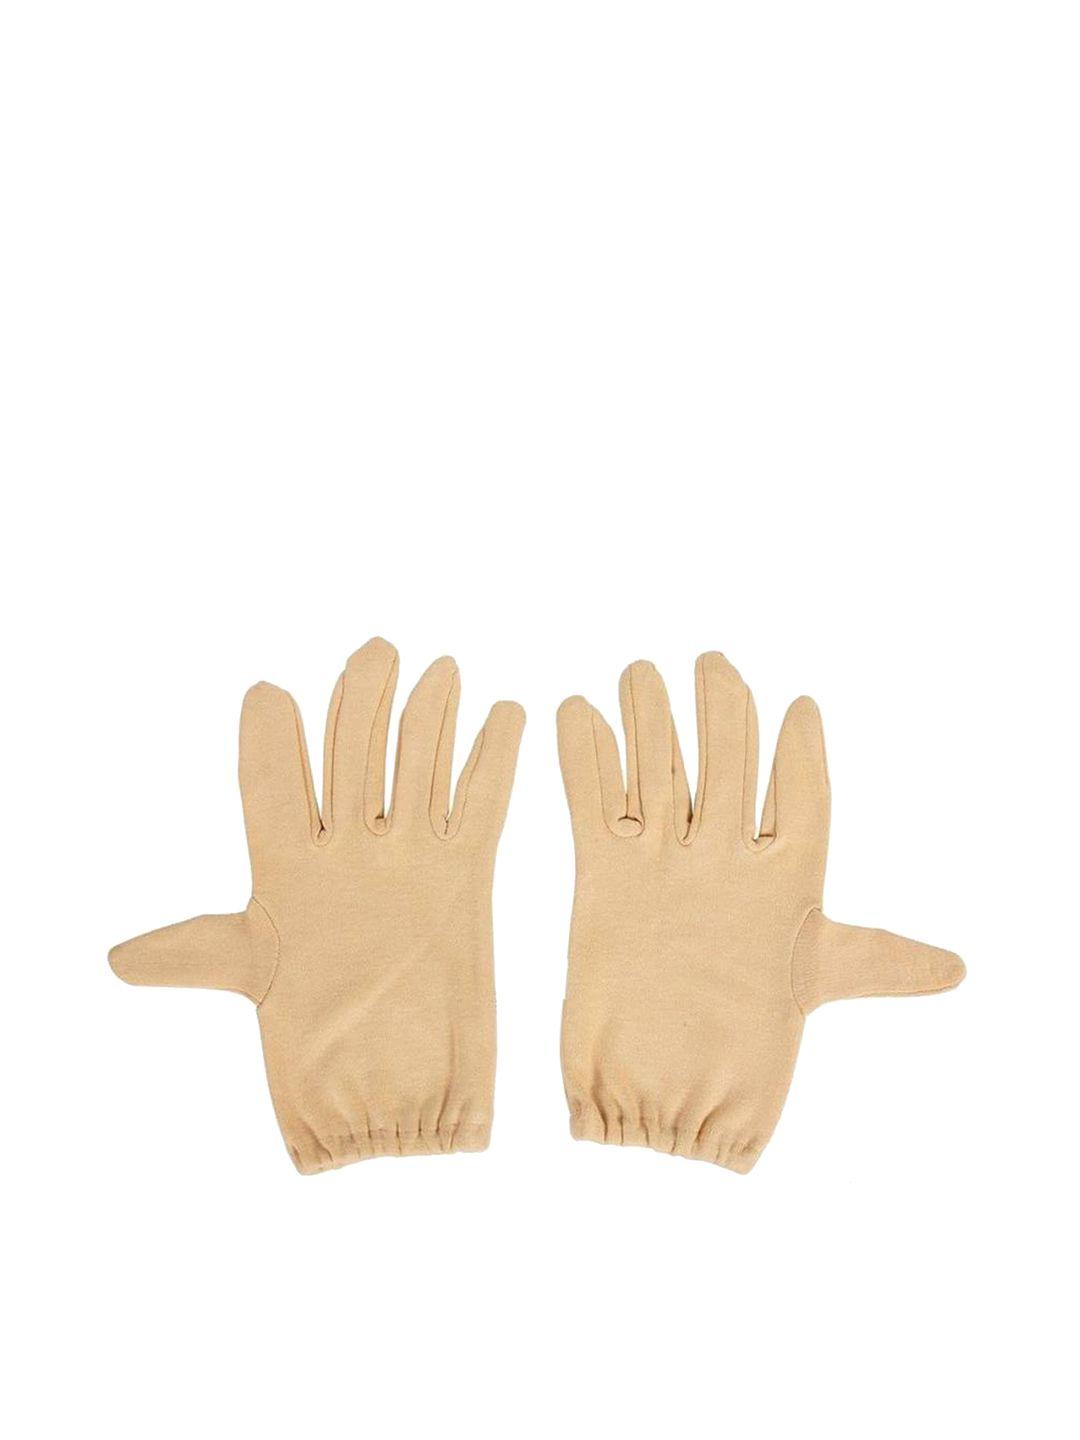 aadikart cotton half hand gloves